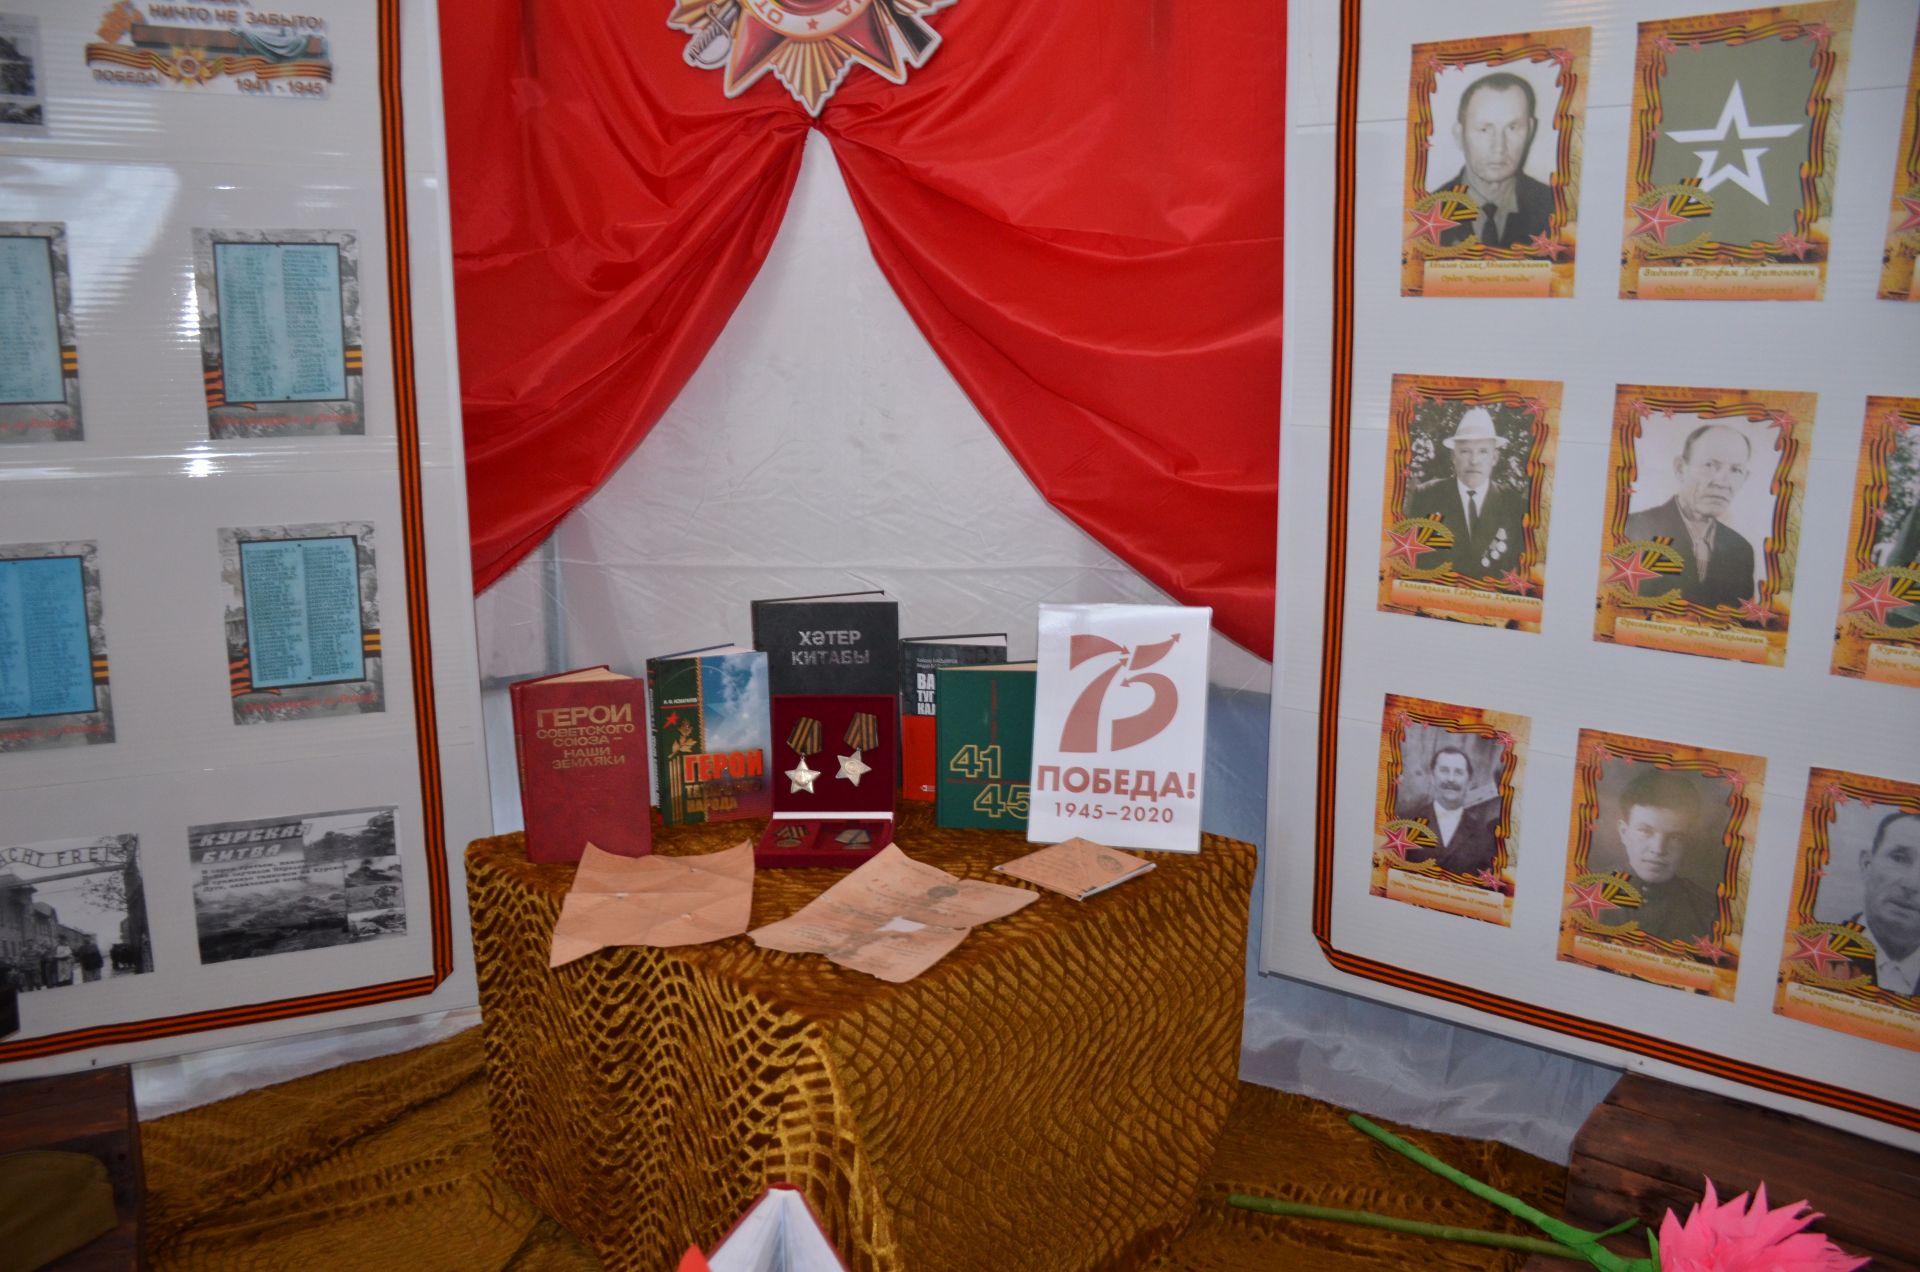 В Агрызском районе работает выставка, посвященная 100-летию ТАССР